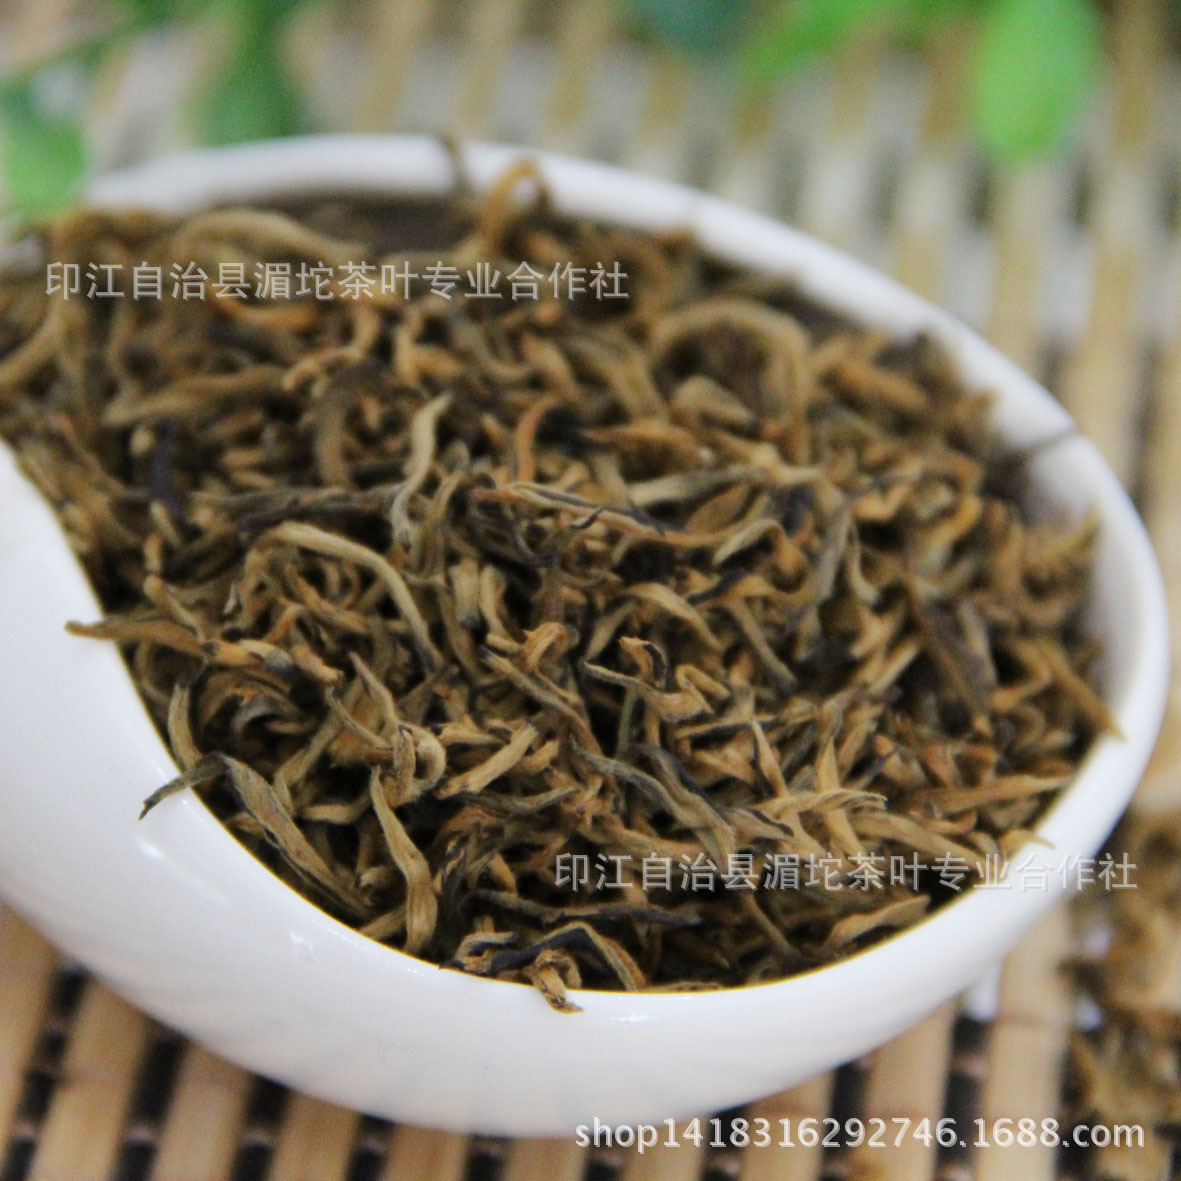 IMG_10650 百道工夫红茶 320元斤